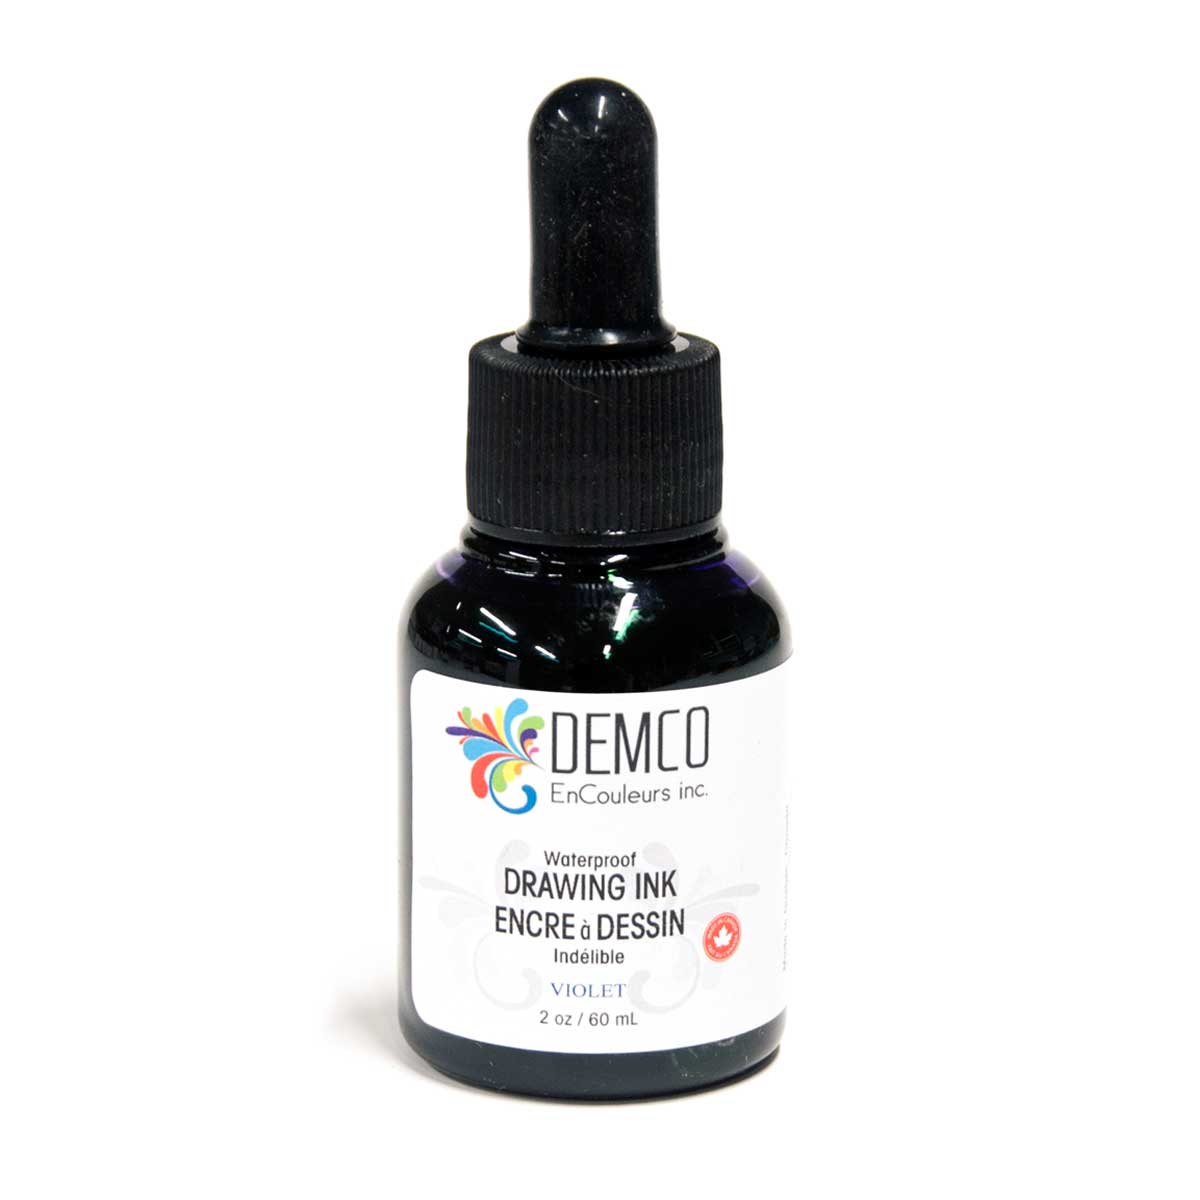 Demco Waterproof Drawing Ink Violet 60 ml